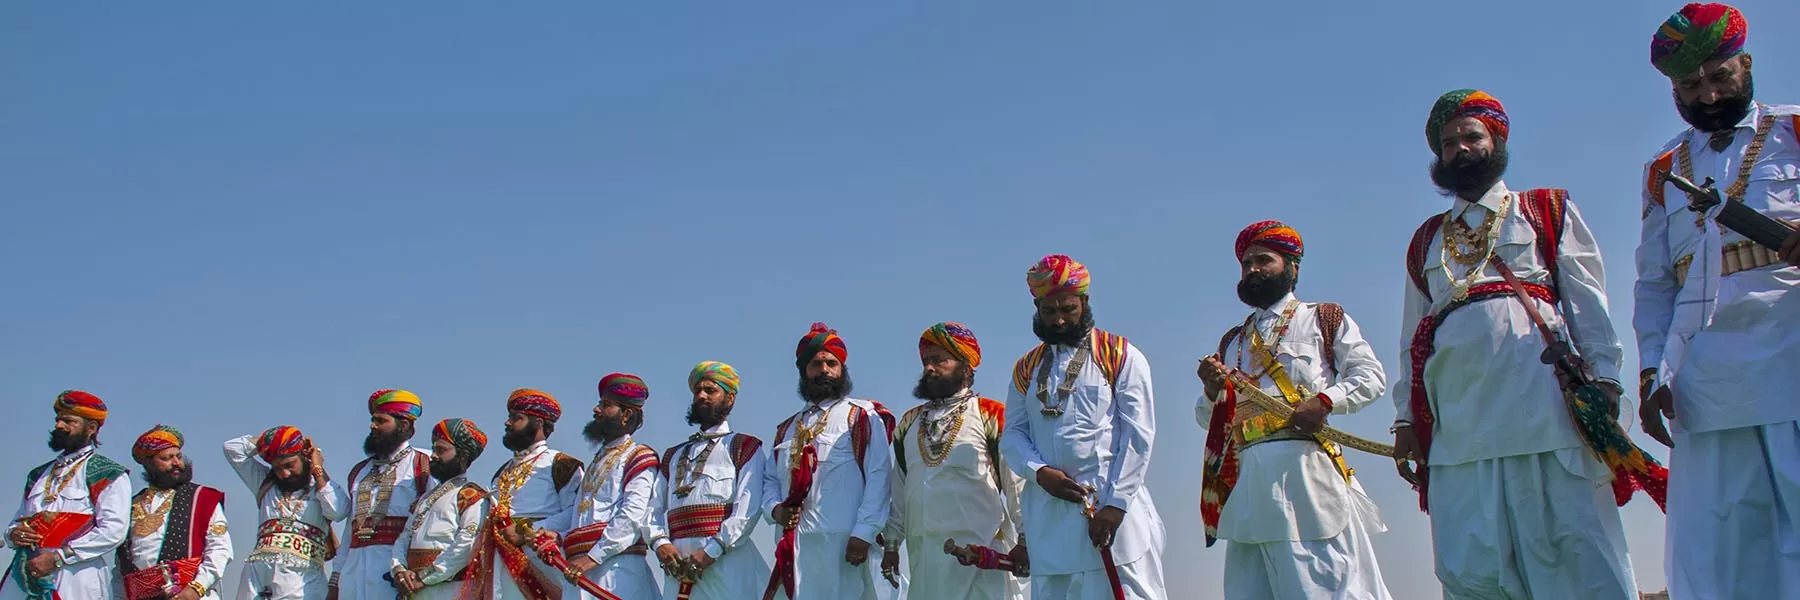 Desert festival in Jaisalmer